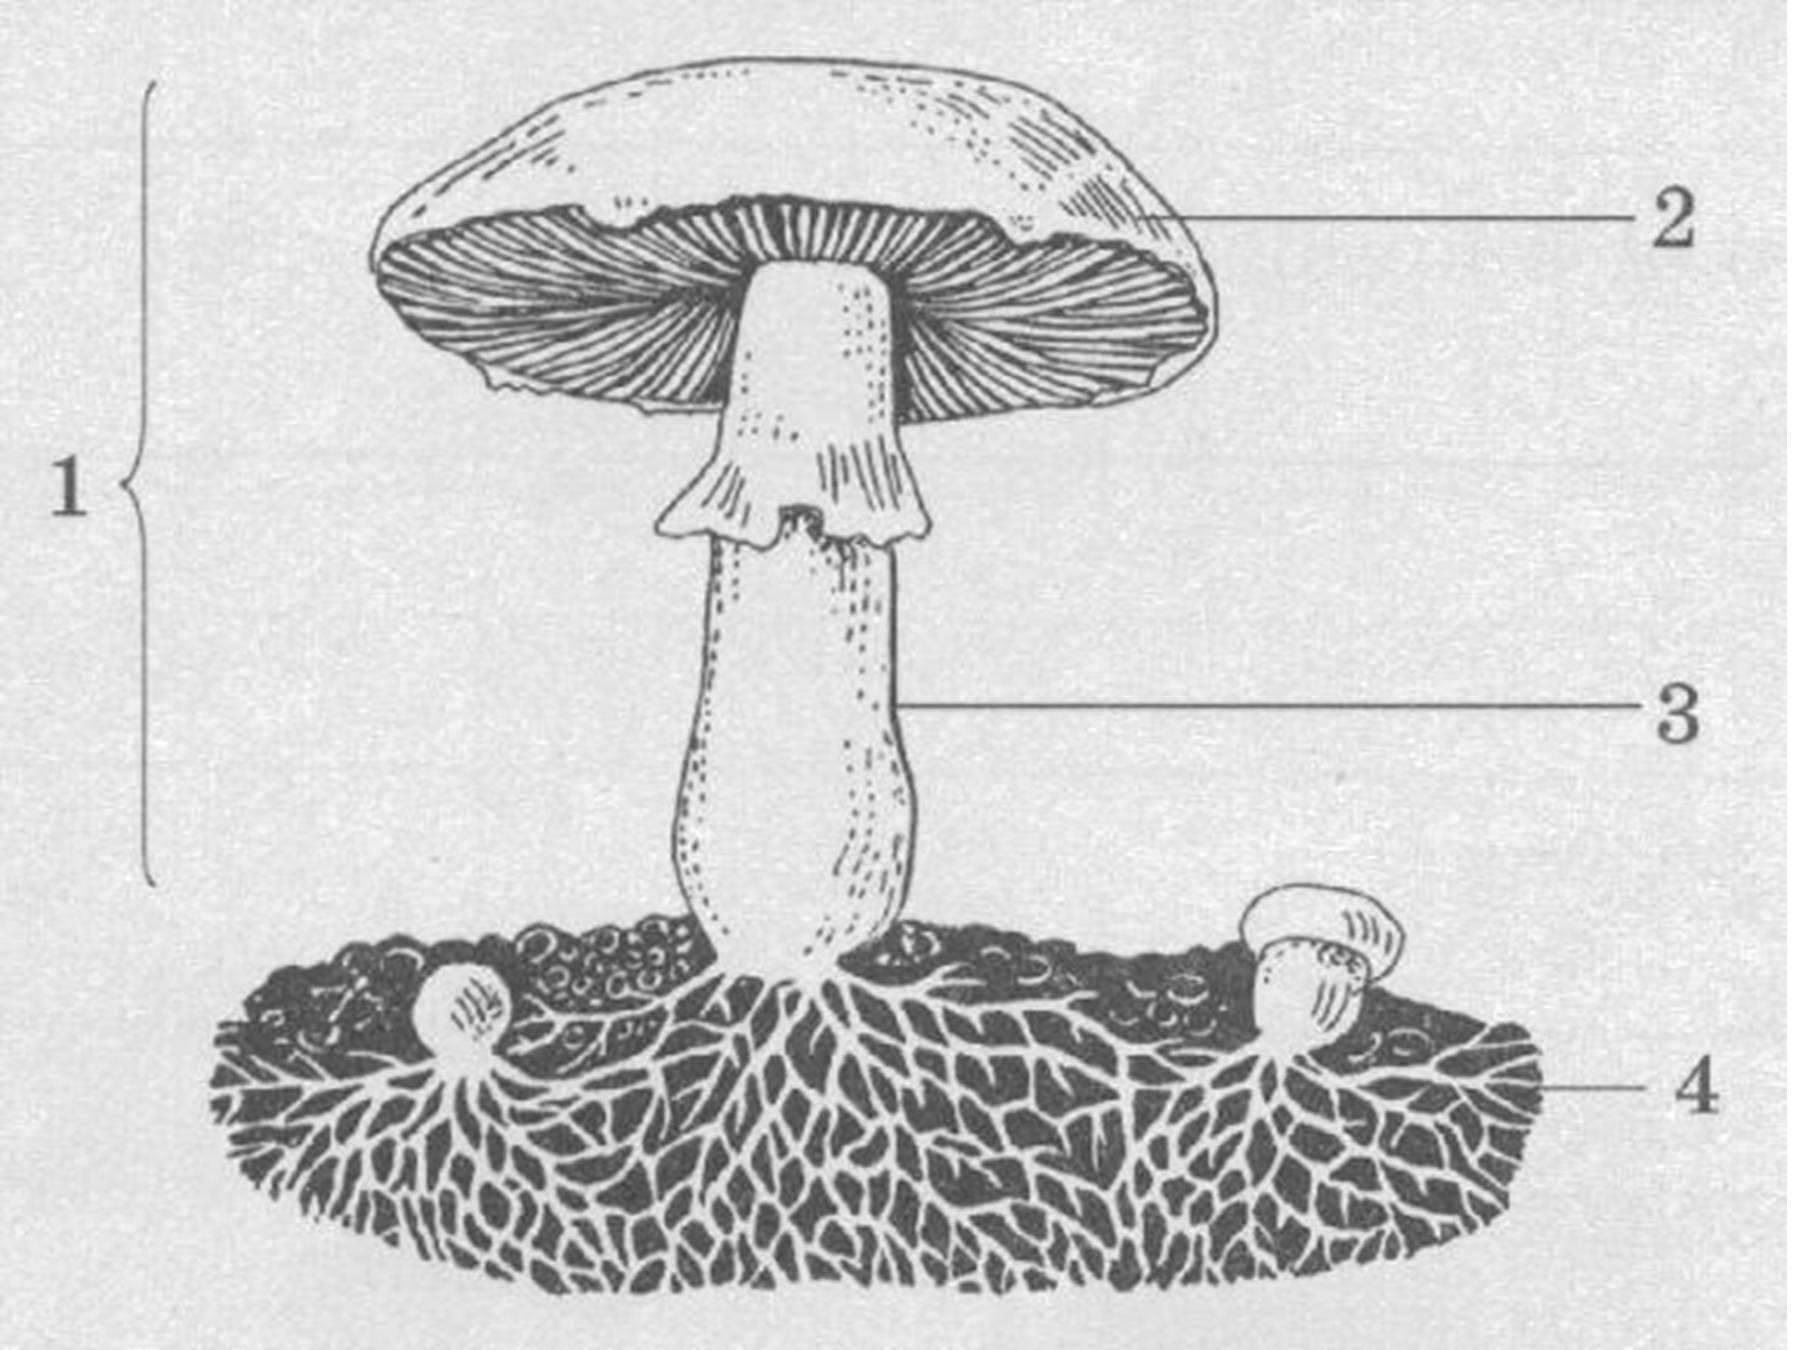 Могут формировать плодовые тела грибы или растения